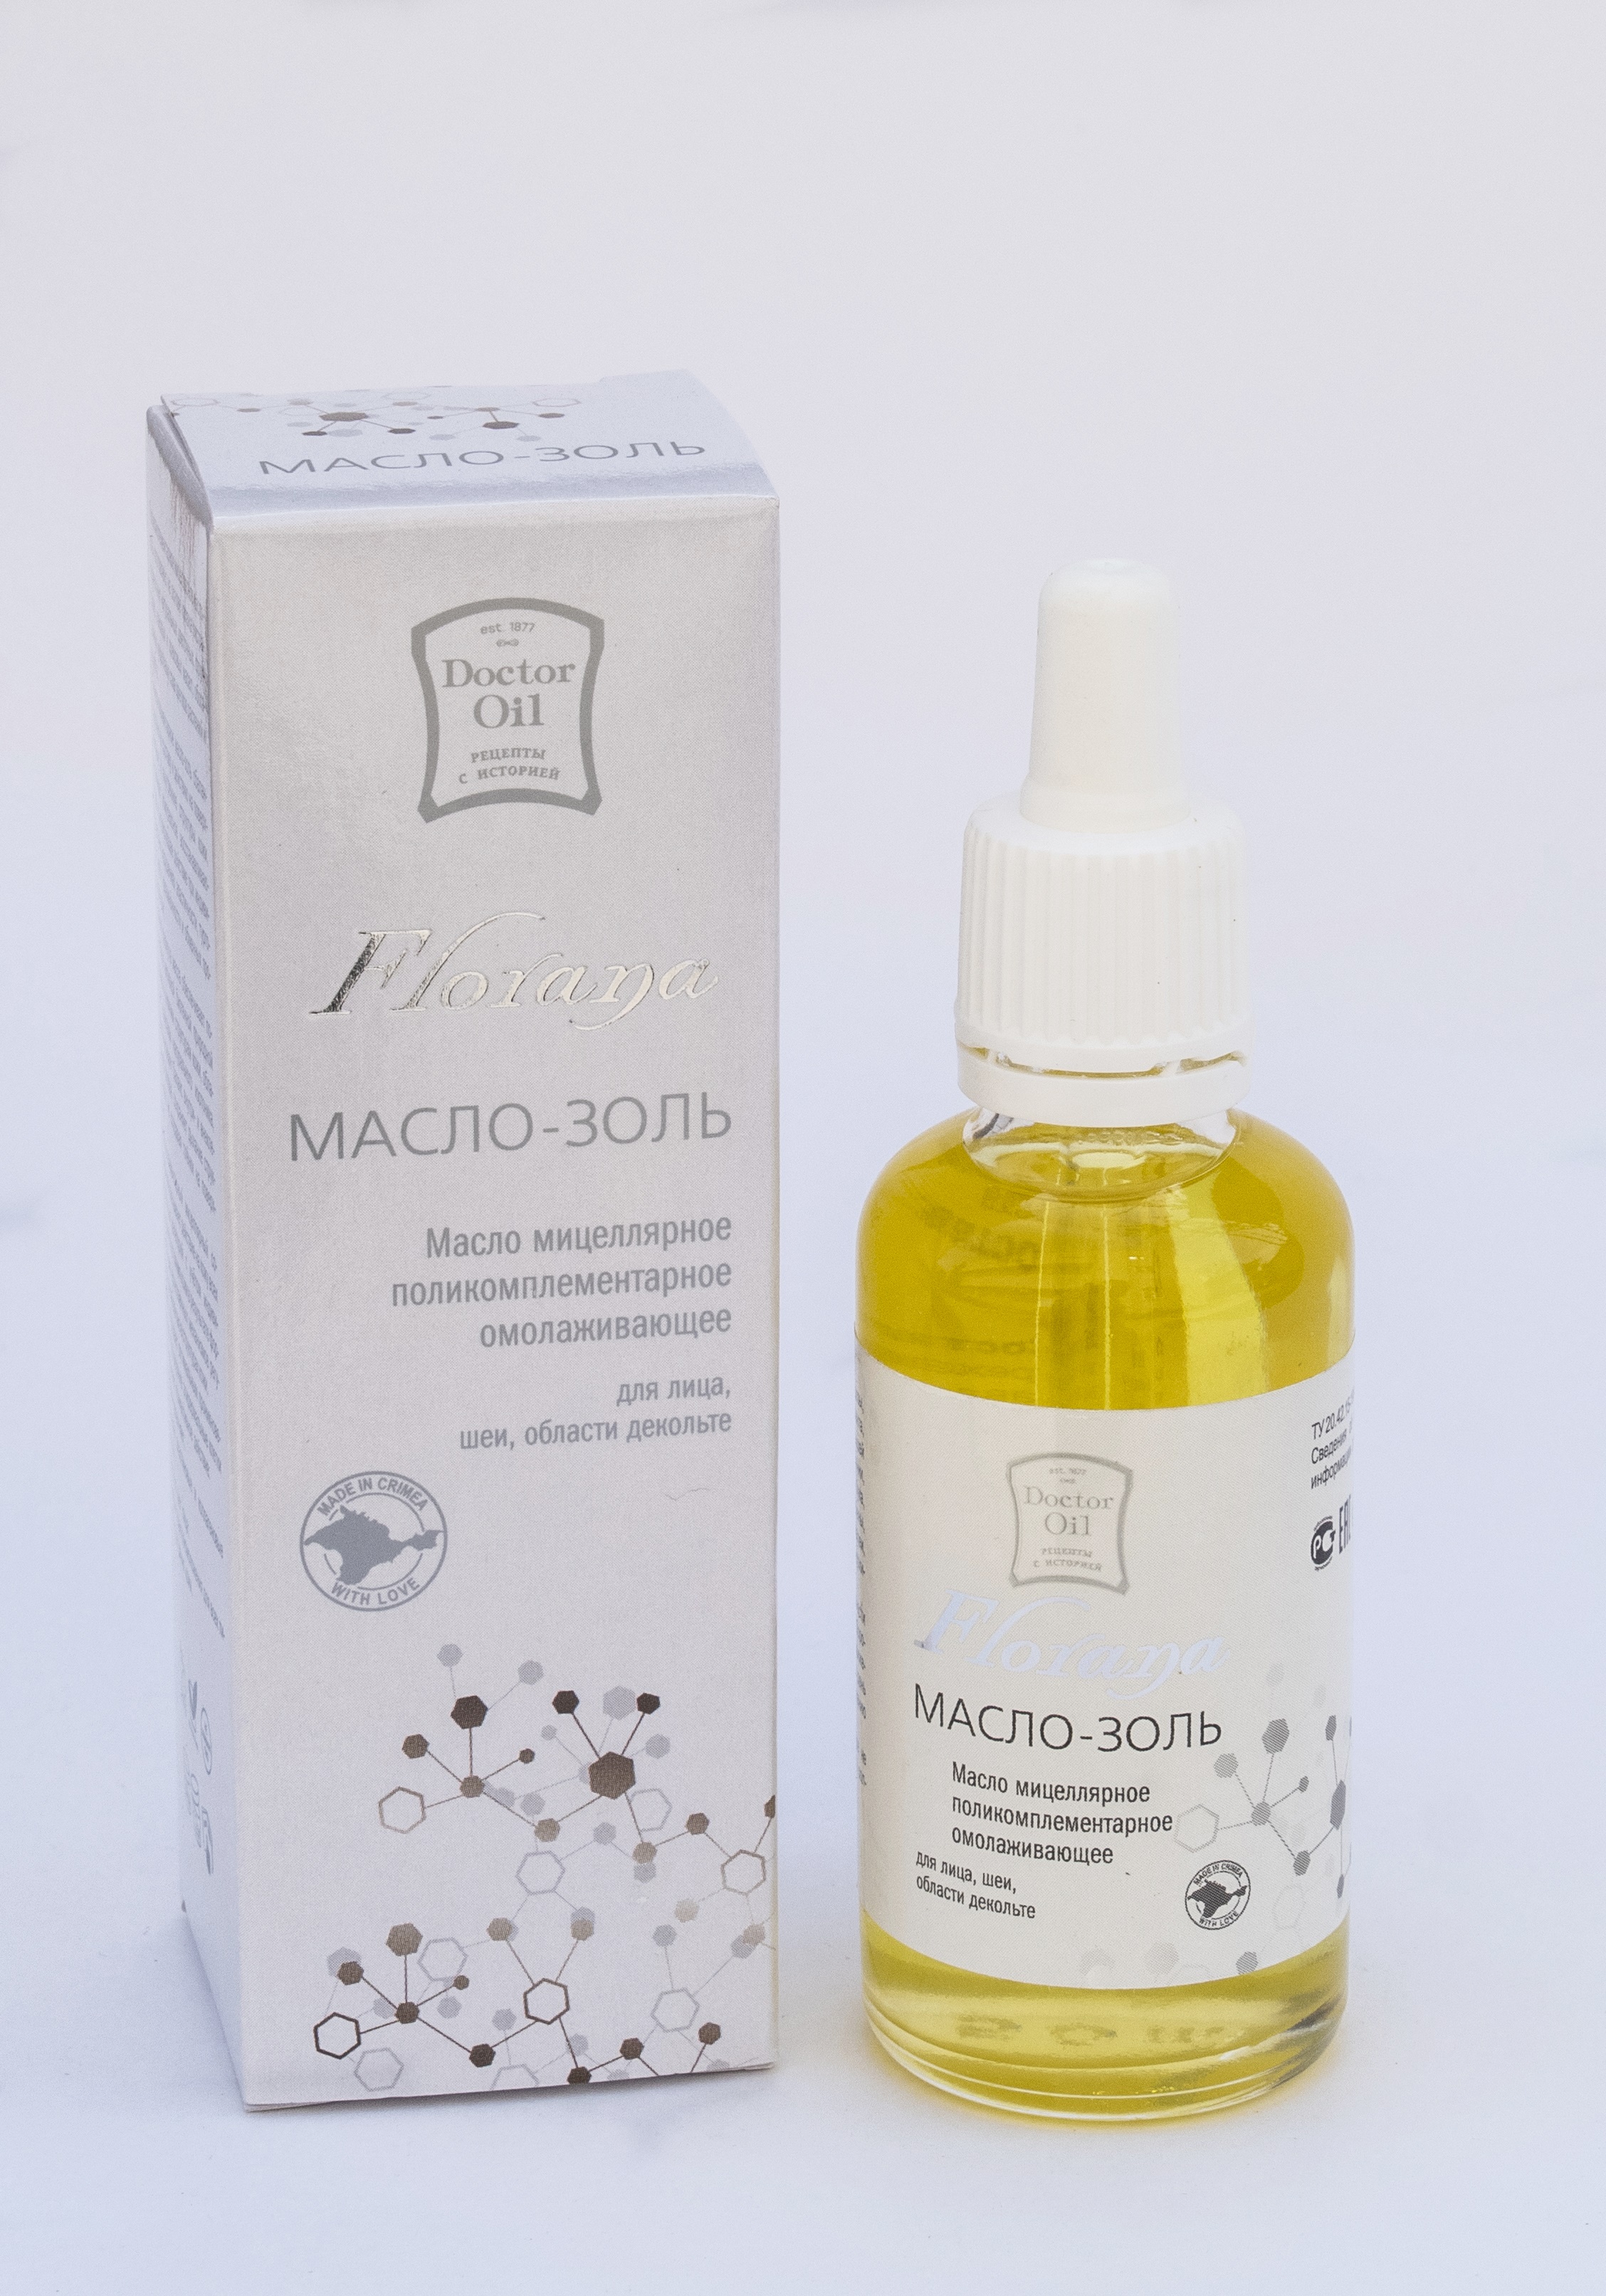 Doctor Oil Florana Масло-золь масло мицеллярное  омолаживающее для лица, шеи, области декольте 50 мл.